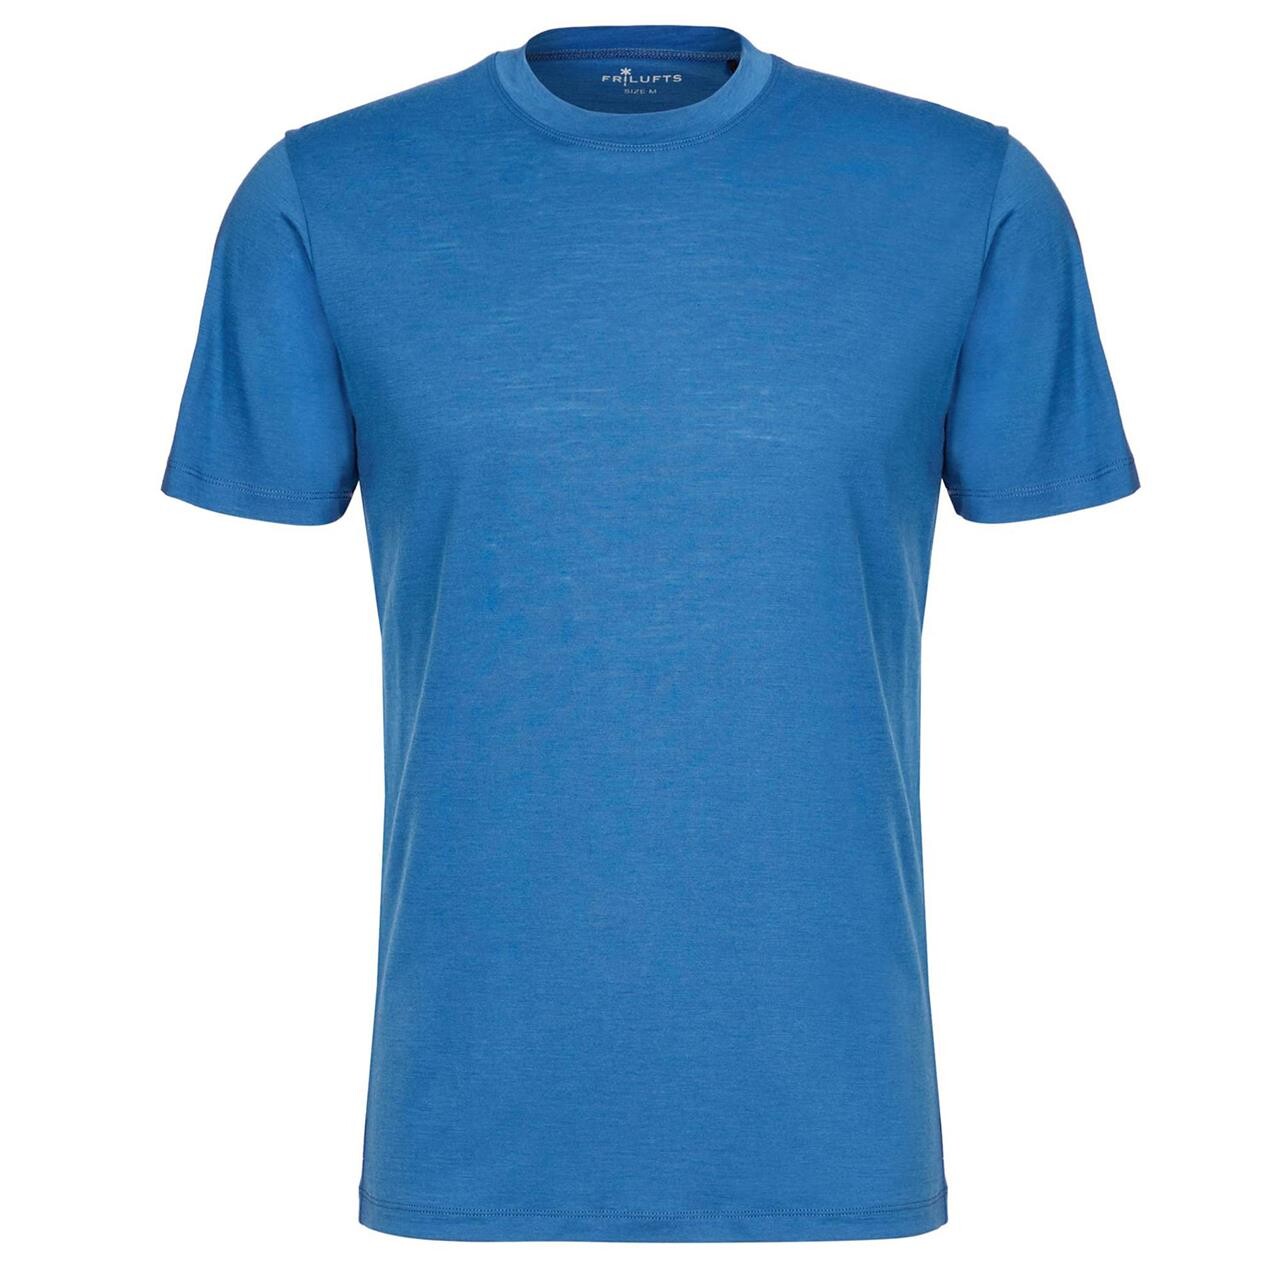 Se Frilufts Mens Waiho T-shirt (Blå (DARK BLUE) Medium) hos Friluftsland.dk